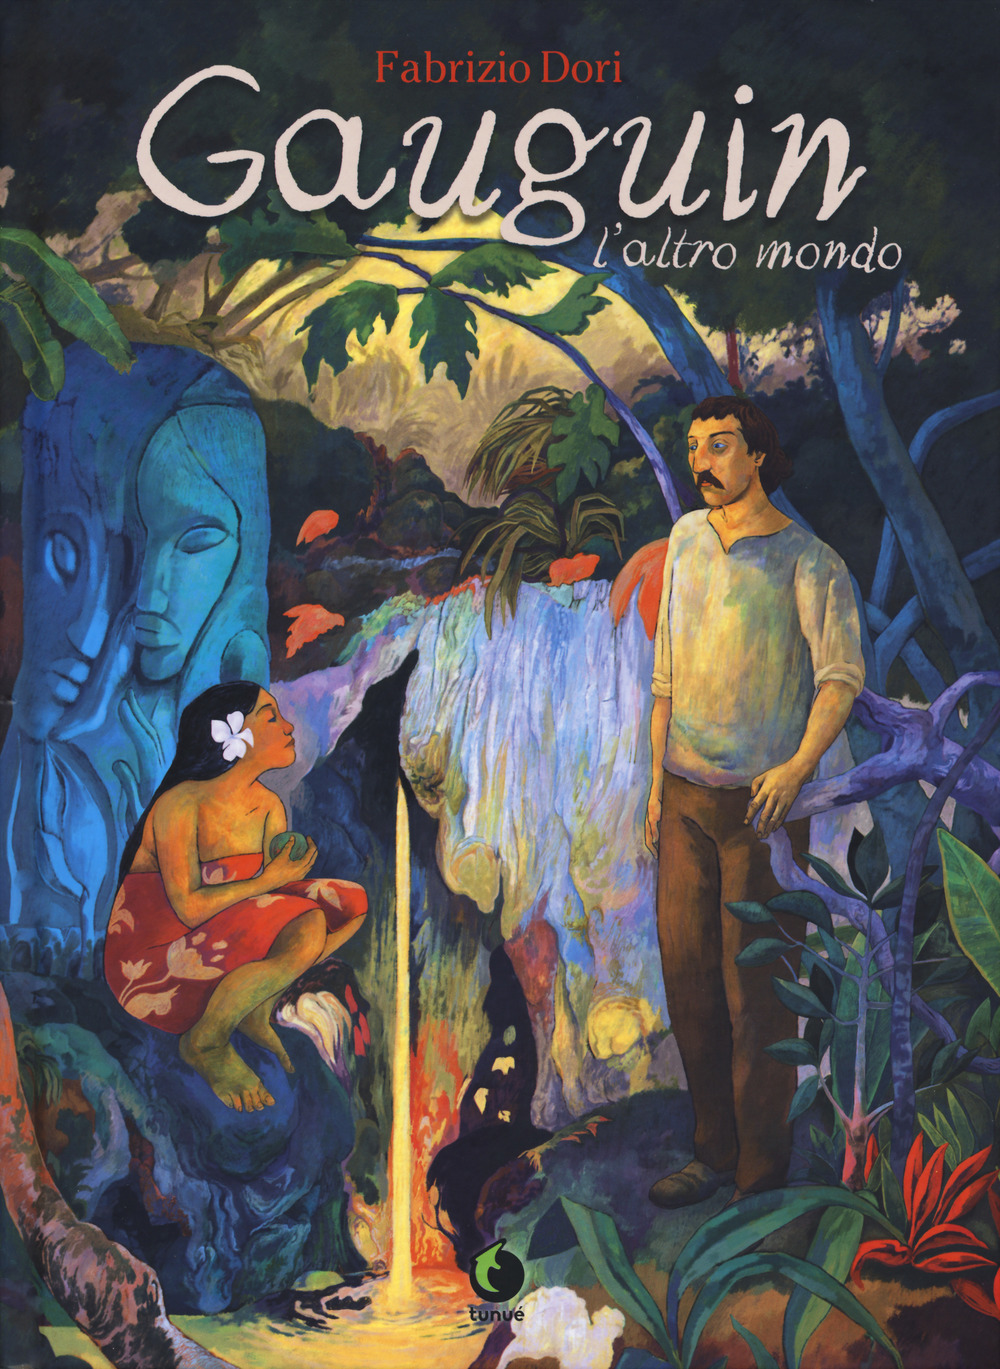 Gauguin, l’altro mondo: la graphic novel che omaggia la vita di Paul Gauguin